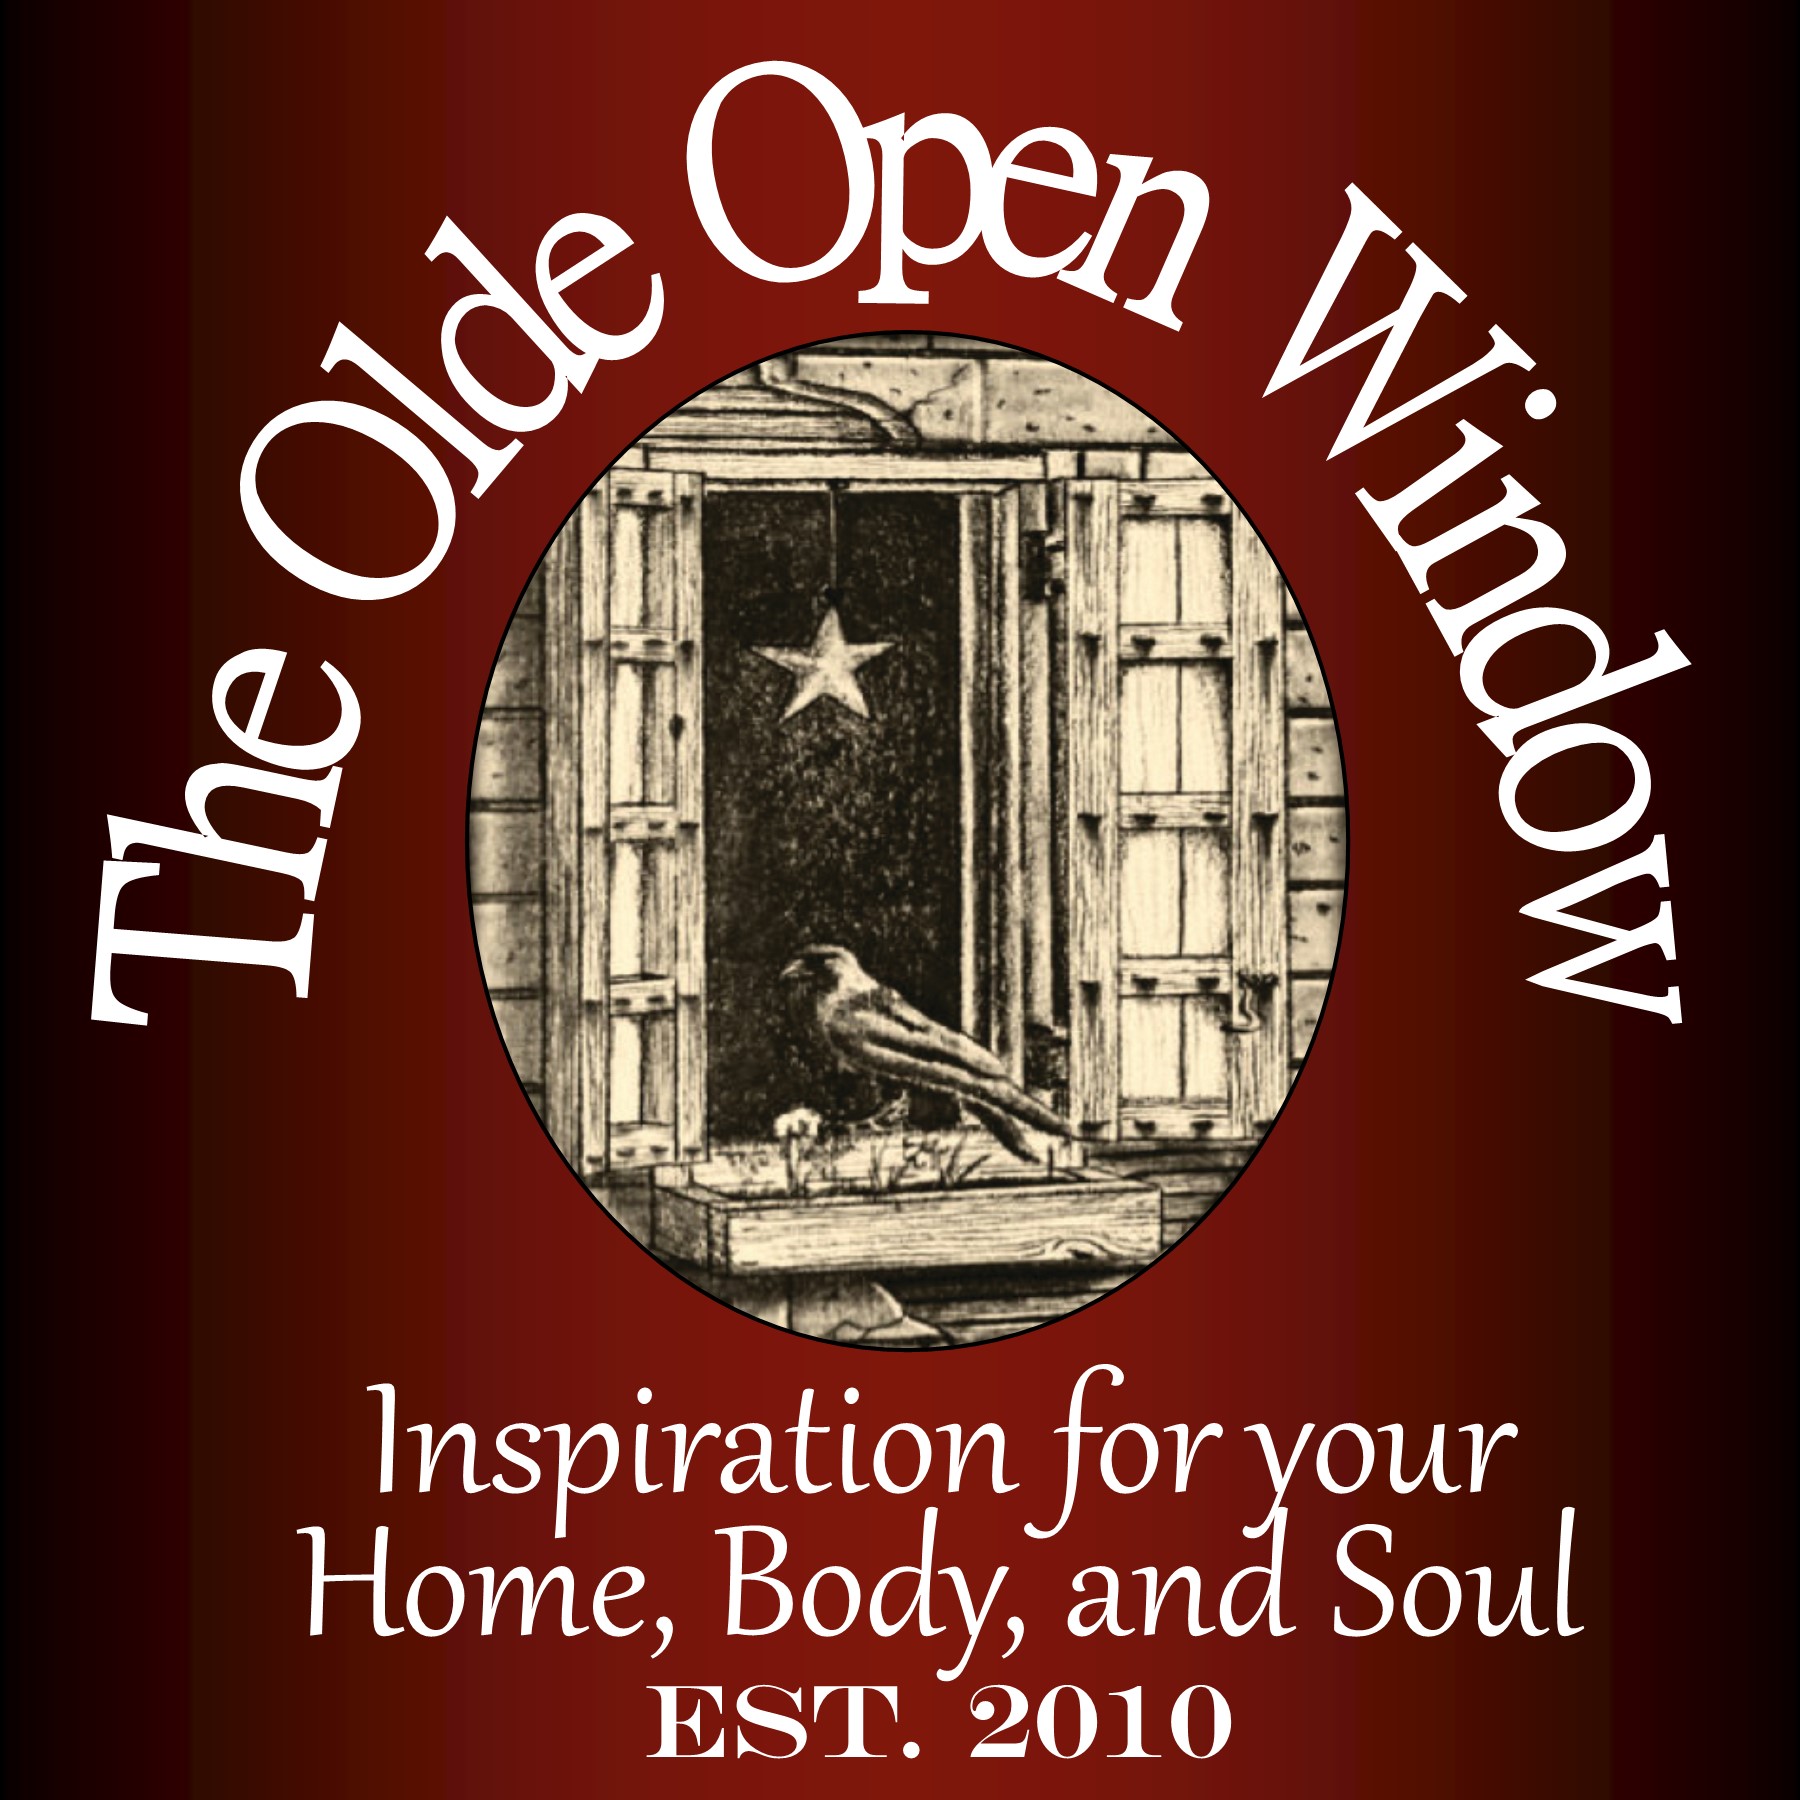 The Olde Open Window